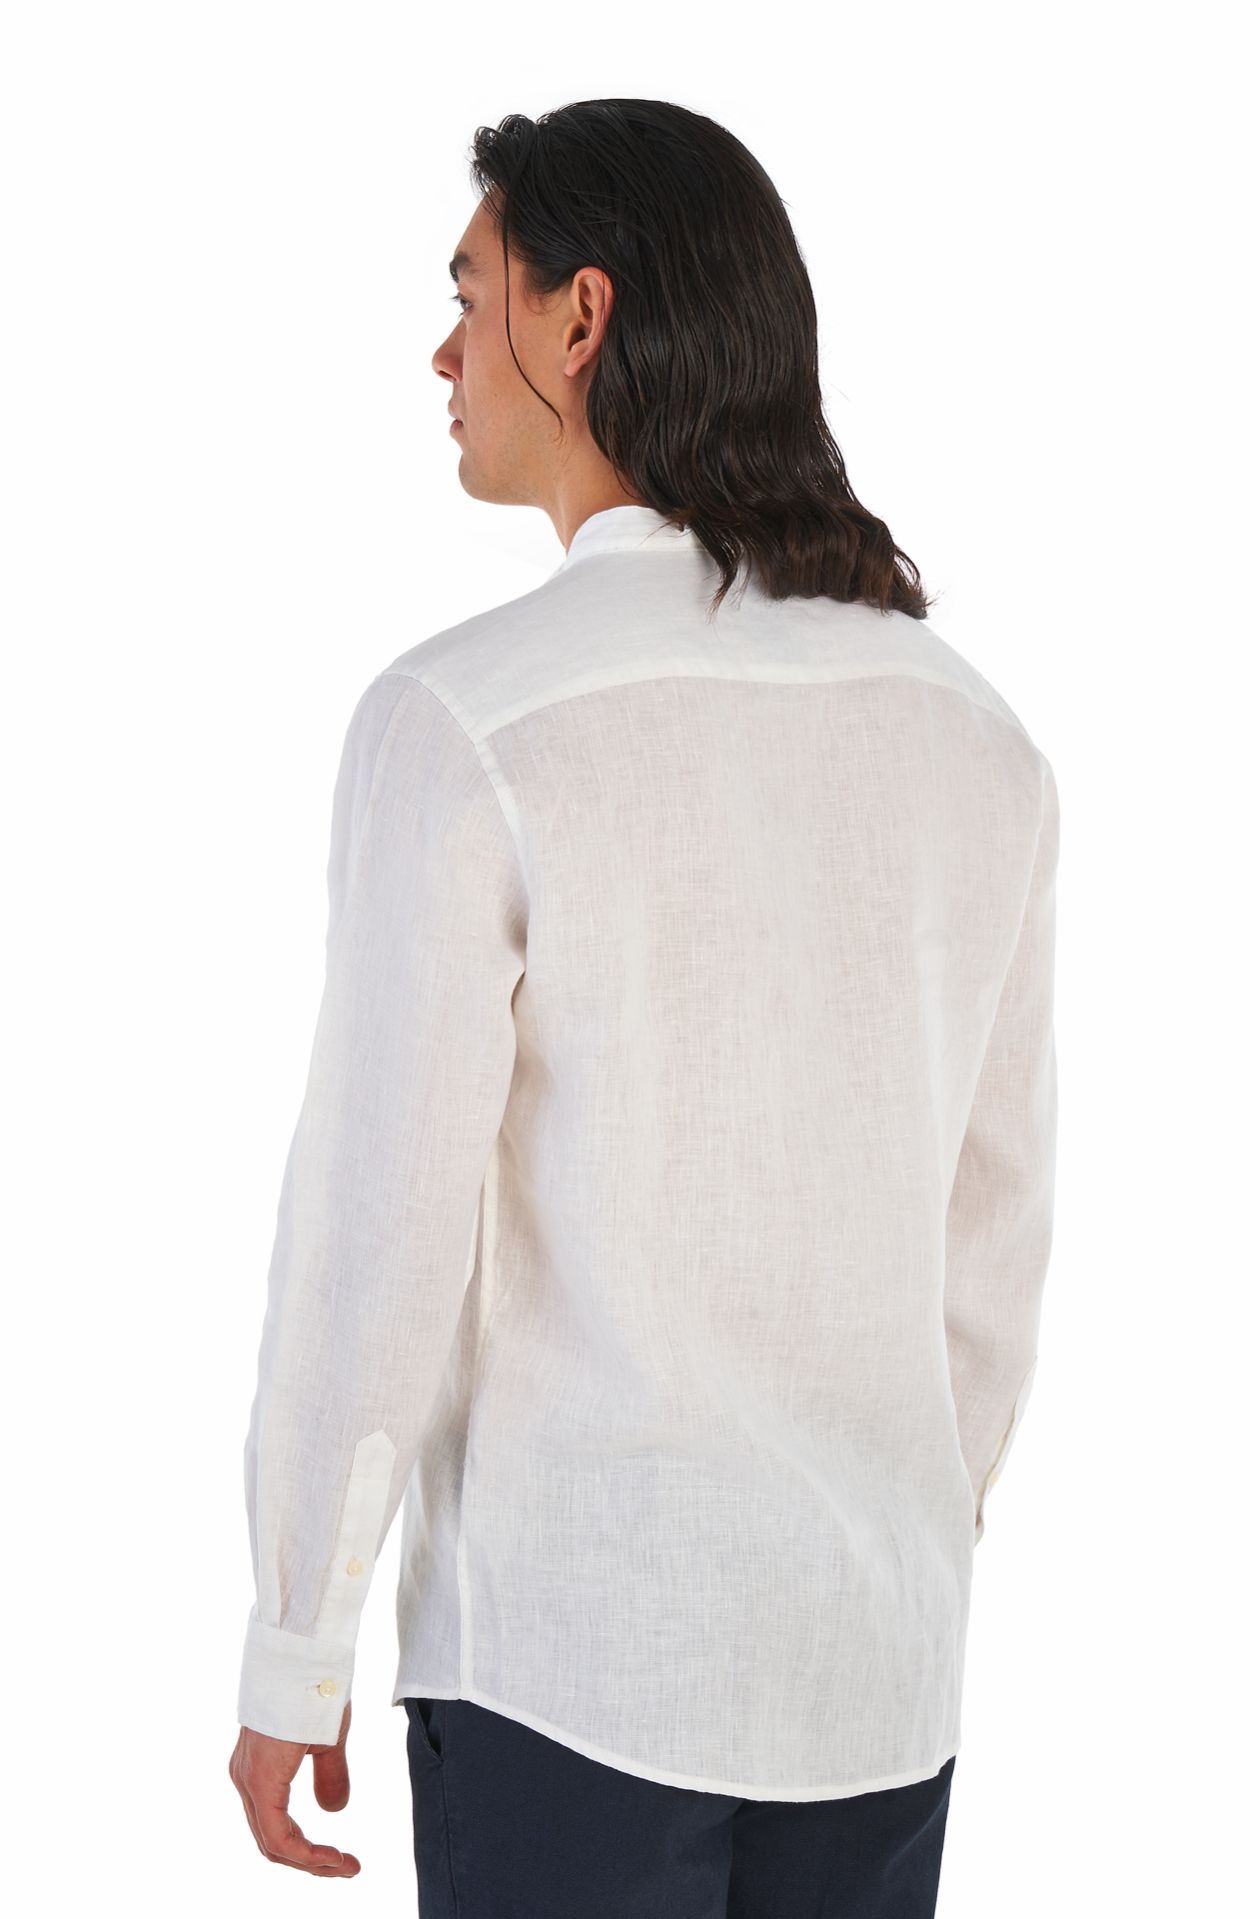 Amerigo Vespucci camisa de lino